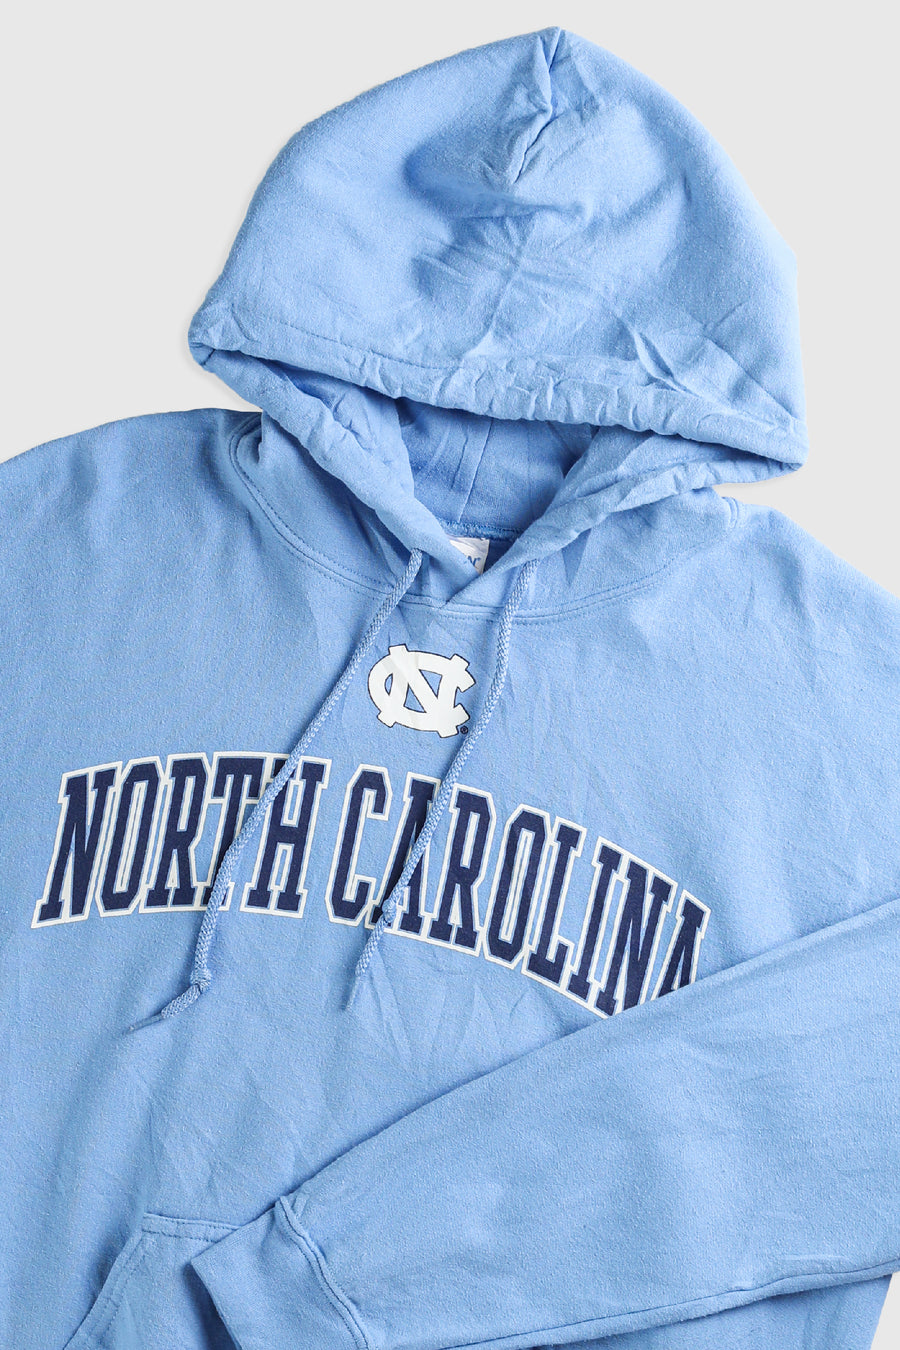 Vintage North Carolina Blue Sweatshirt